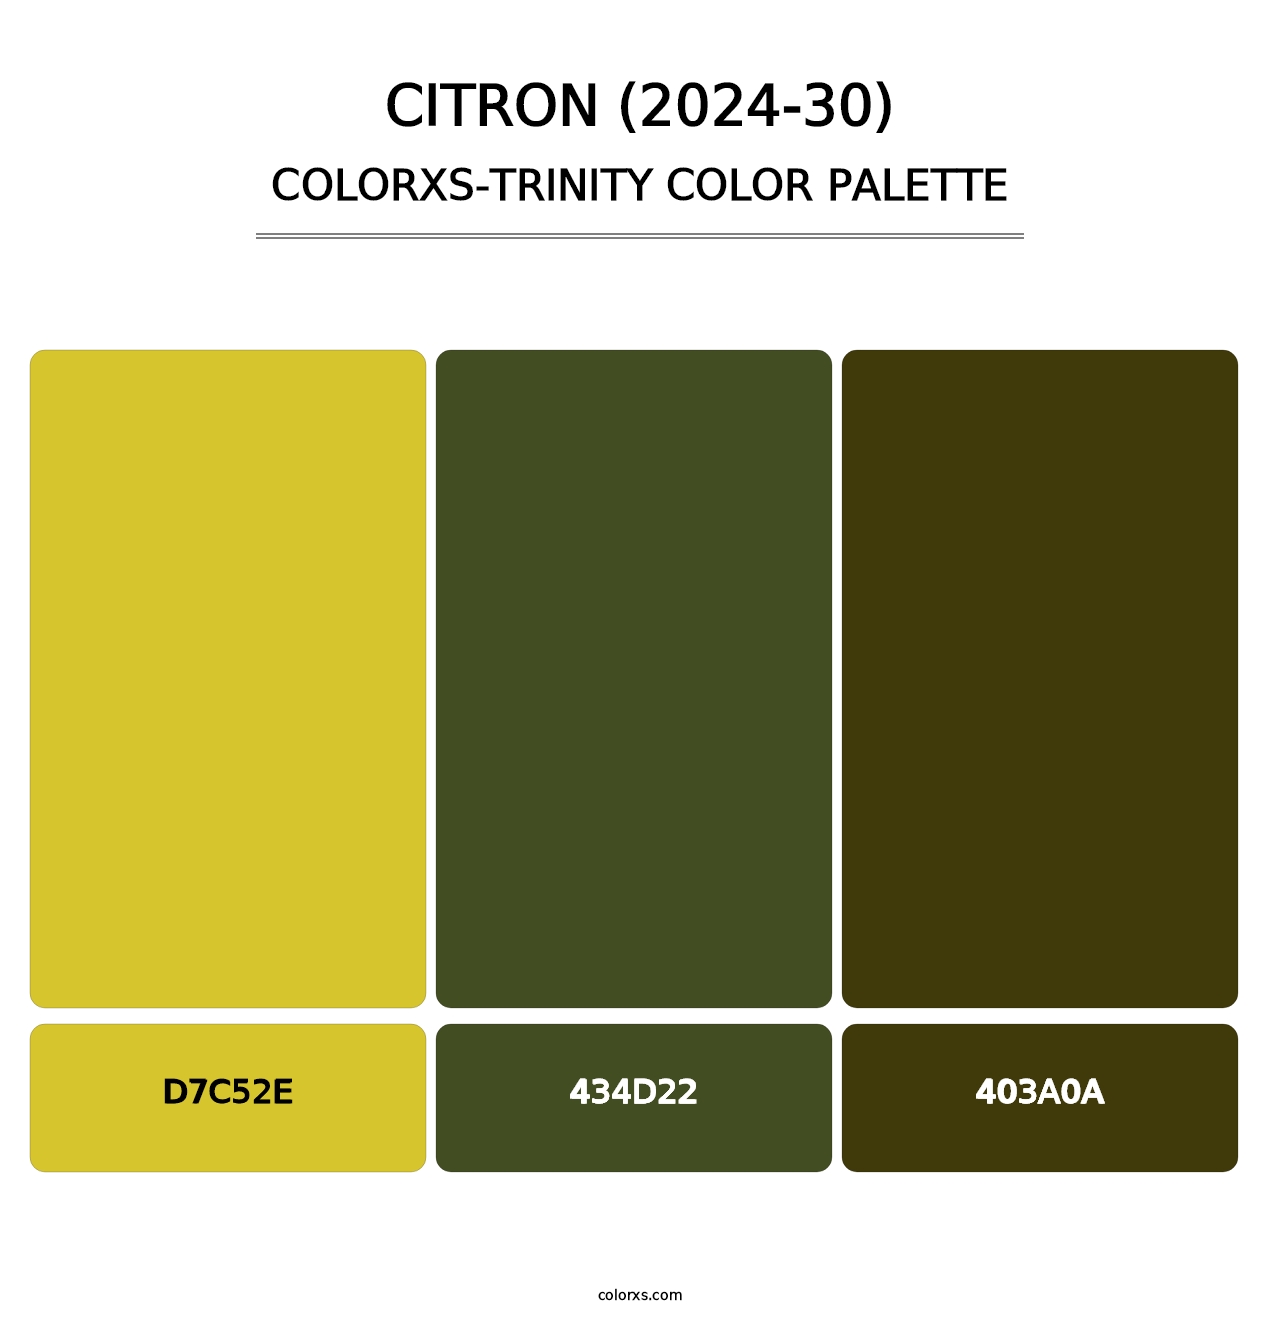 Citron (2024-30) - Colorxs Trinity Palette